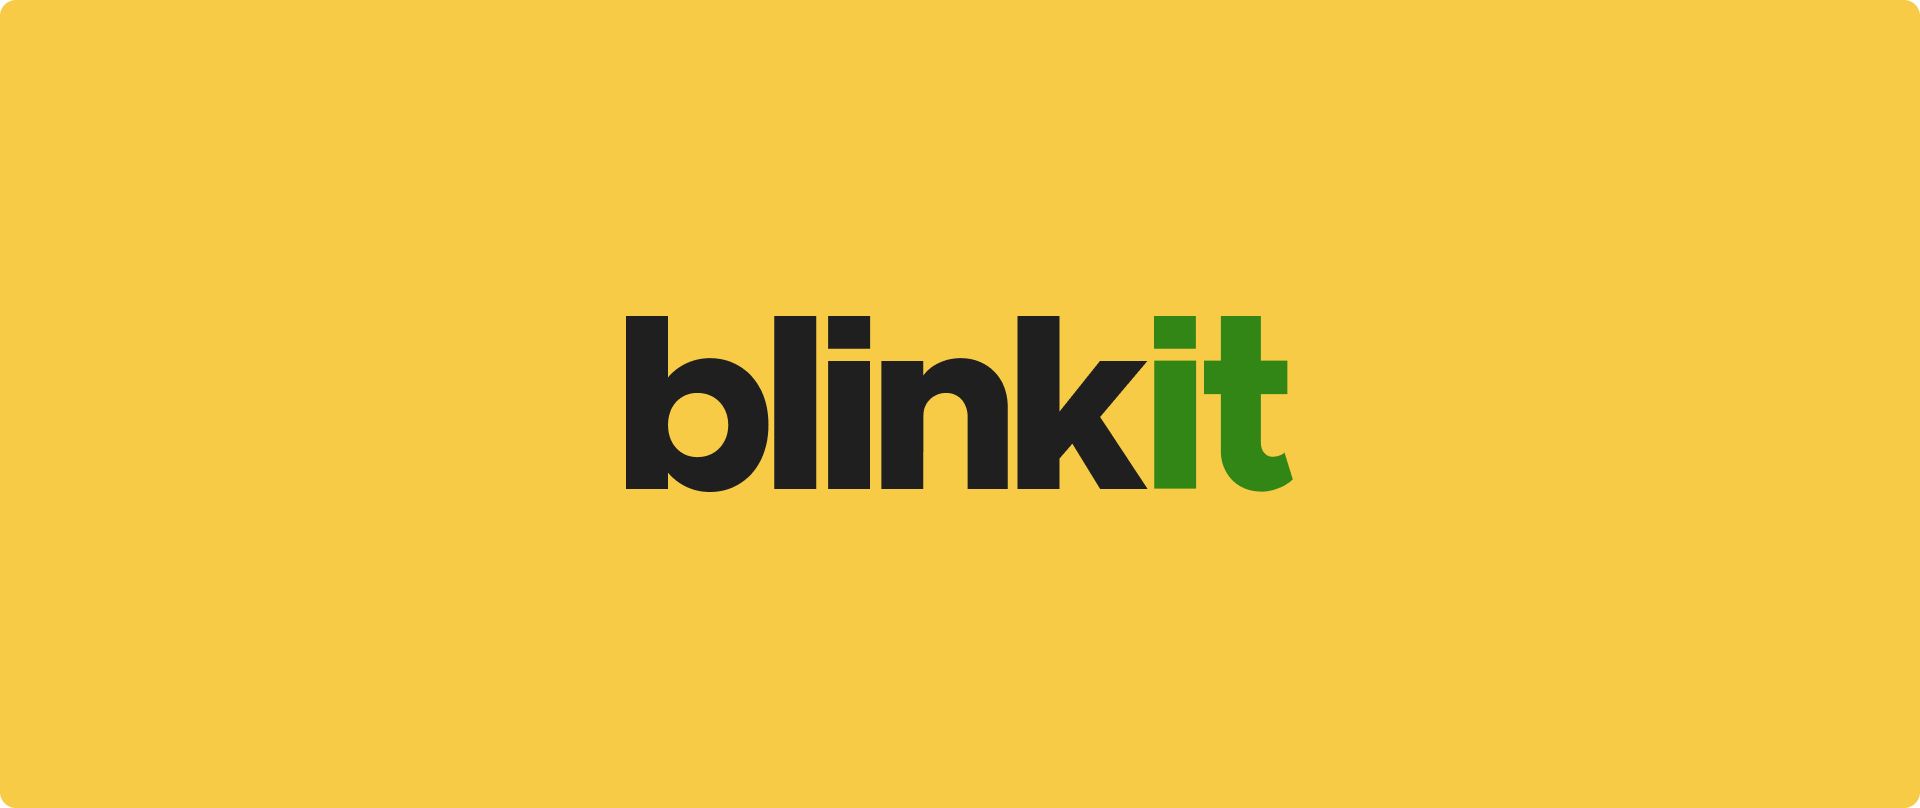 Blinkitが機能していないのでしょうか？トラブルシューティングのヒントを調べ、シームレスな食料品の買い物に最適な Blinkit の代替手段を見つけてください。今日は軌道に戻りましょう！